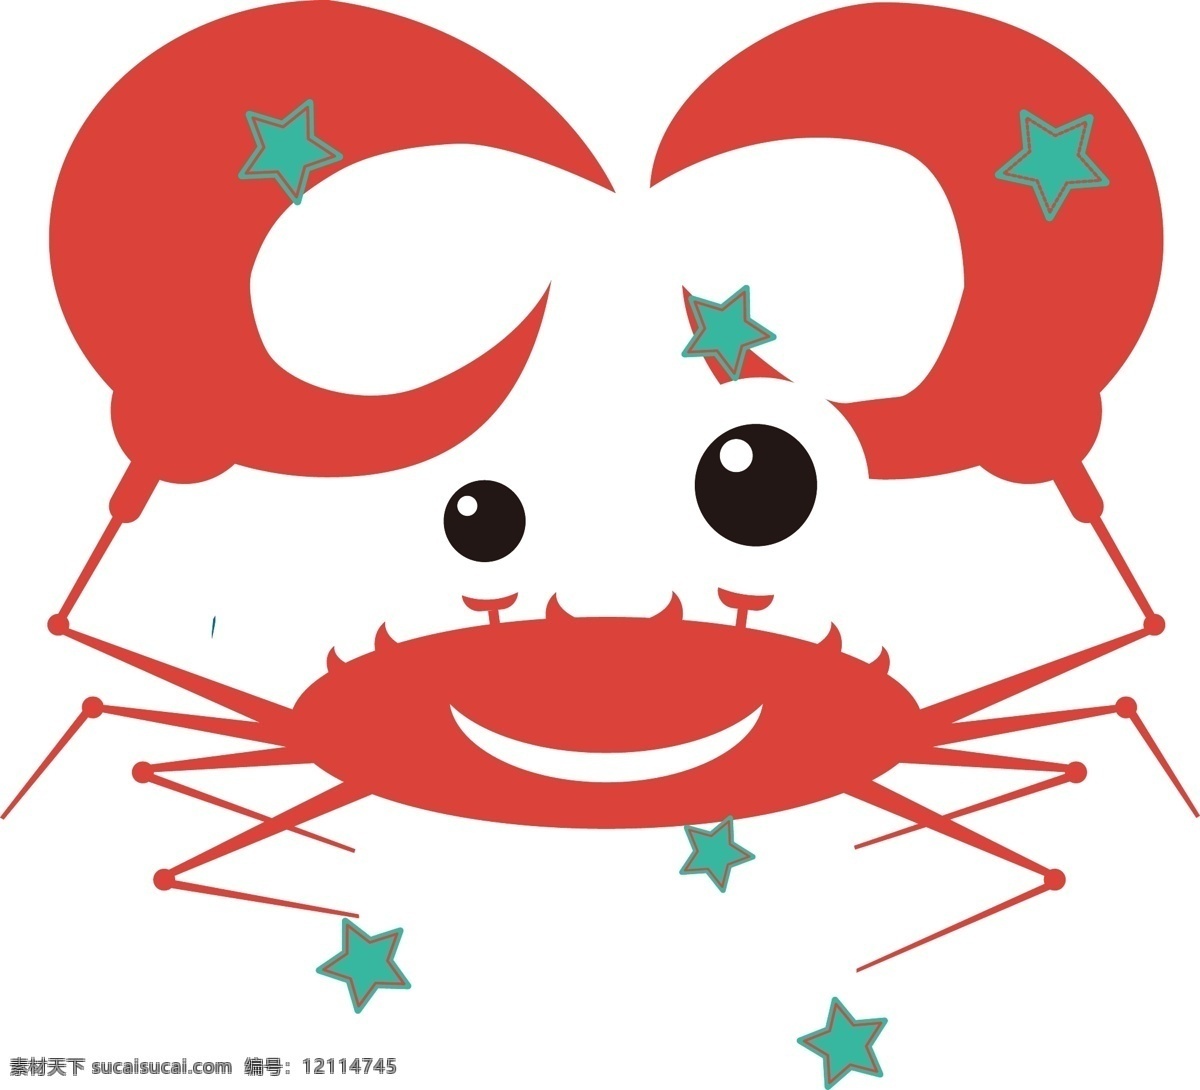 螃蟹 螃蟹设计图 卡通螃蟹 红色螃蟹 螃蟹素材 生物世界 海洋生物